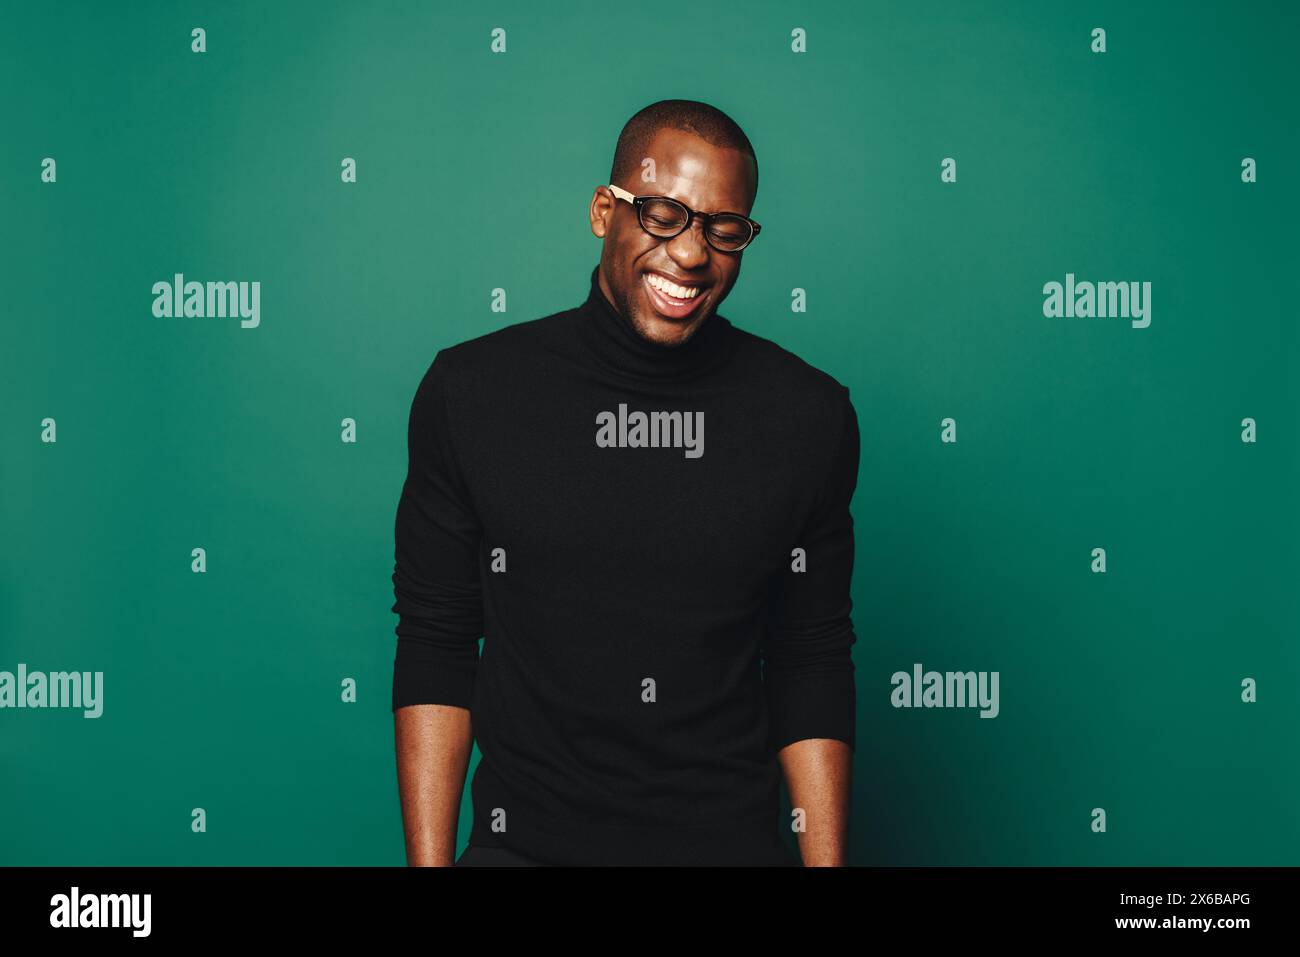 Ein junger afrikanischer Mann mit einem selbstbewussten Lächeln steht in einem Studio. Er trägt eine Brille und einen lässigen schwarzen Pullover, der auf dem grünen Rücken Glück ausstrahlt Stockfoto